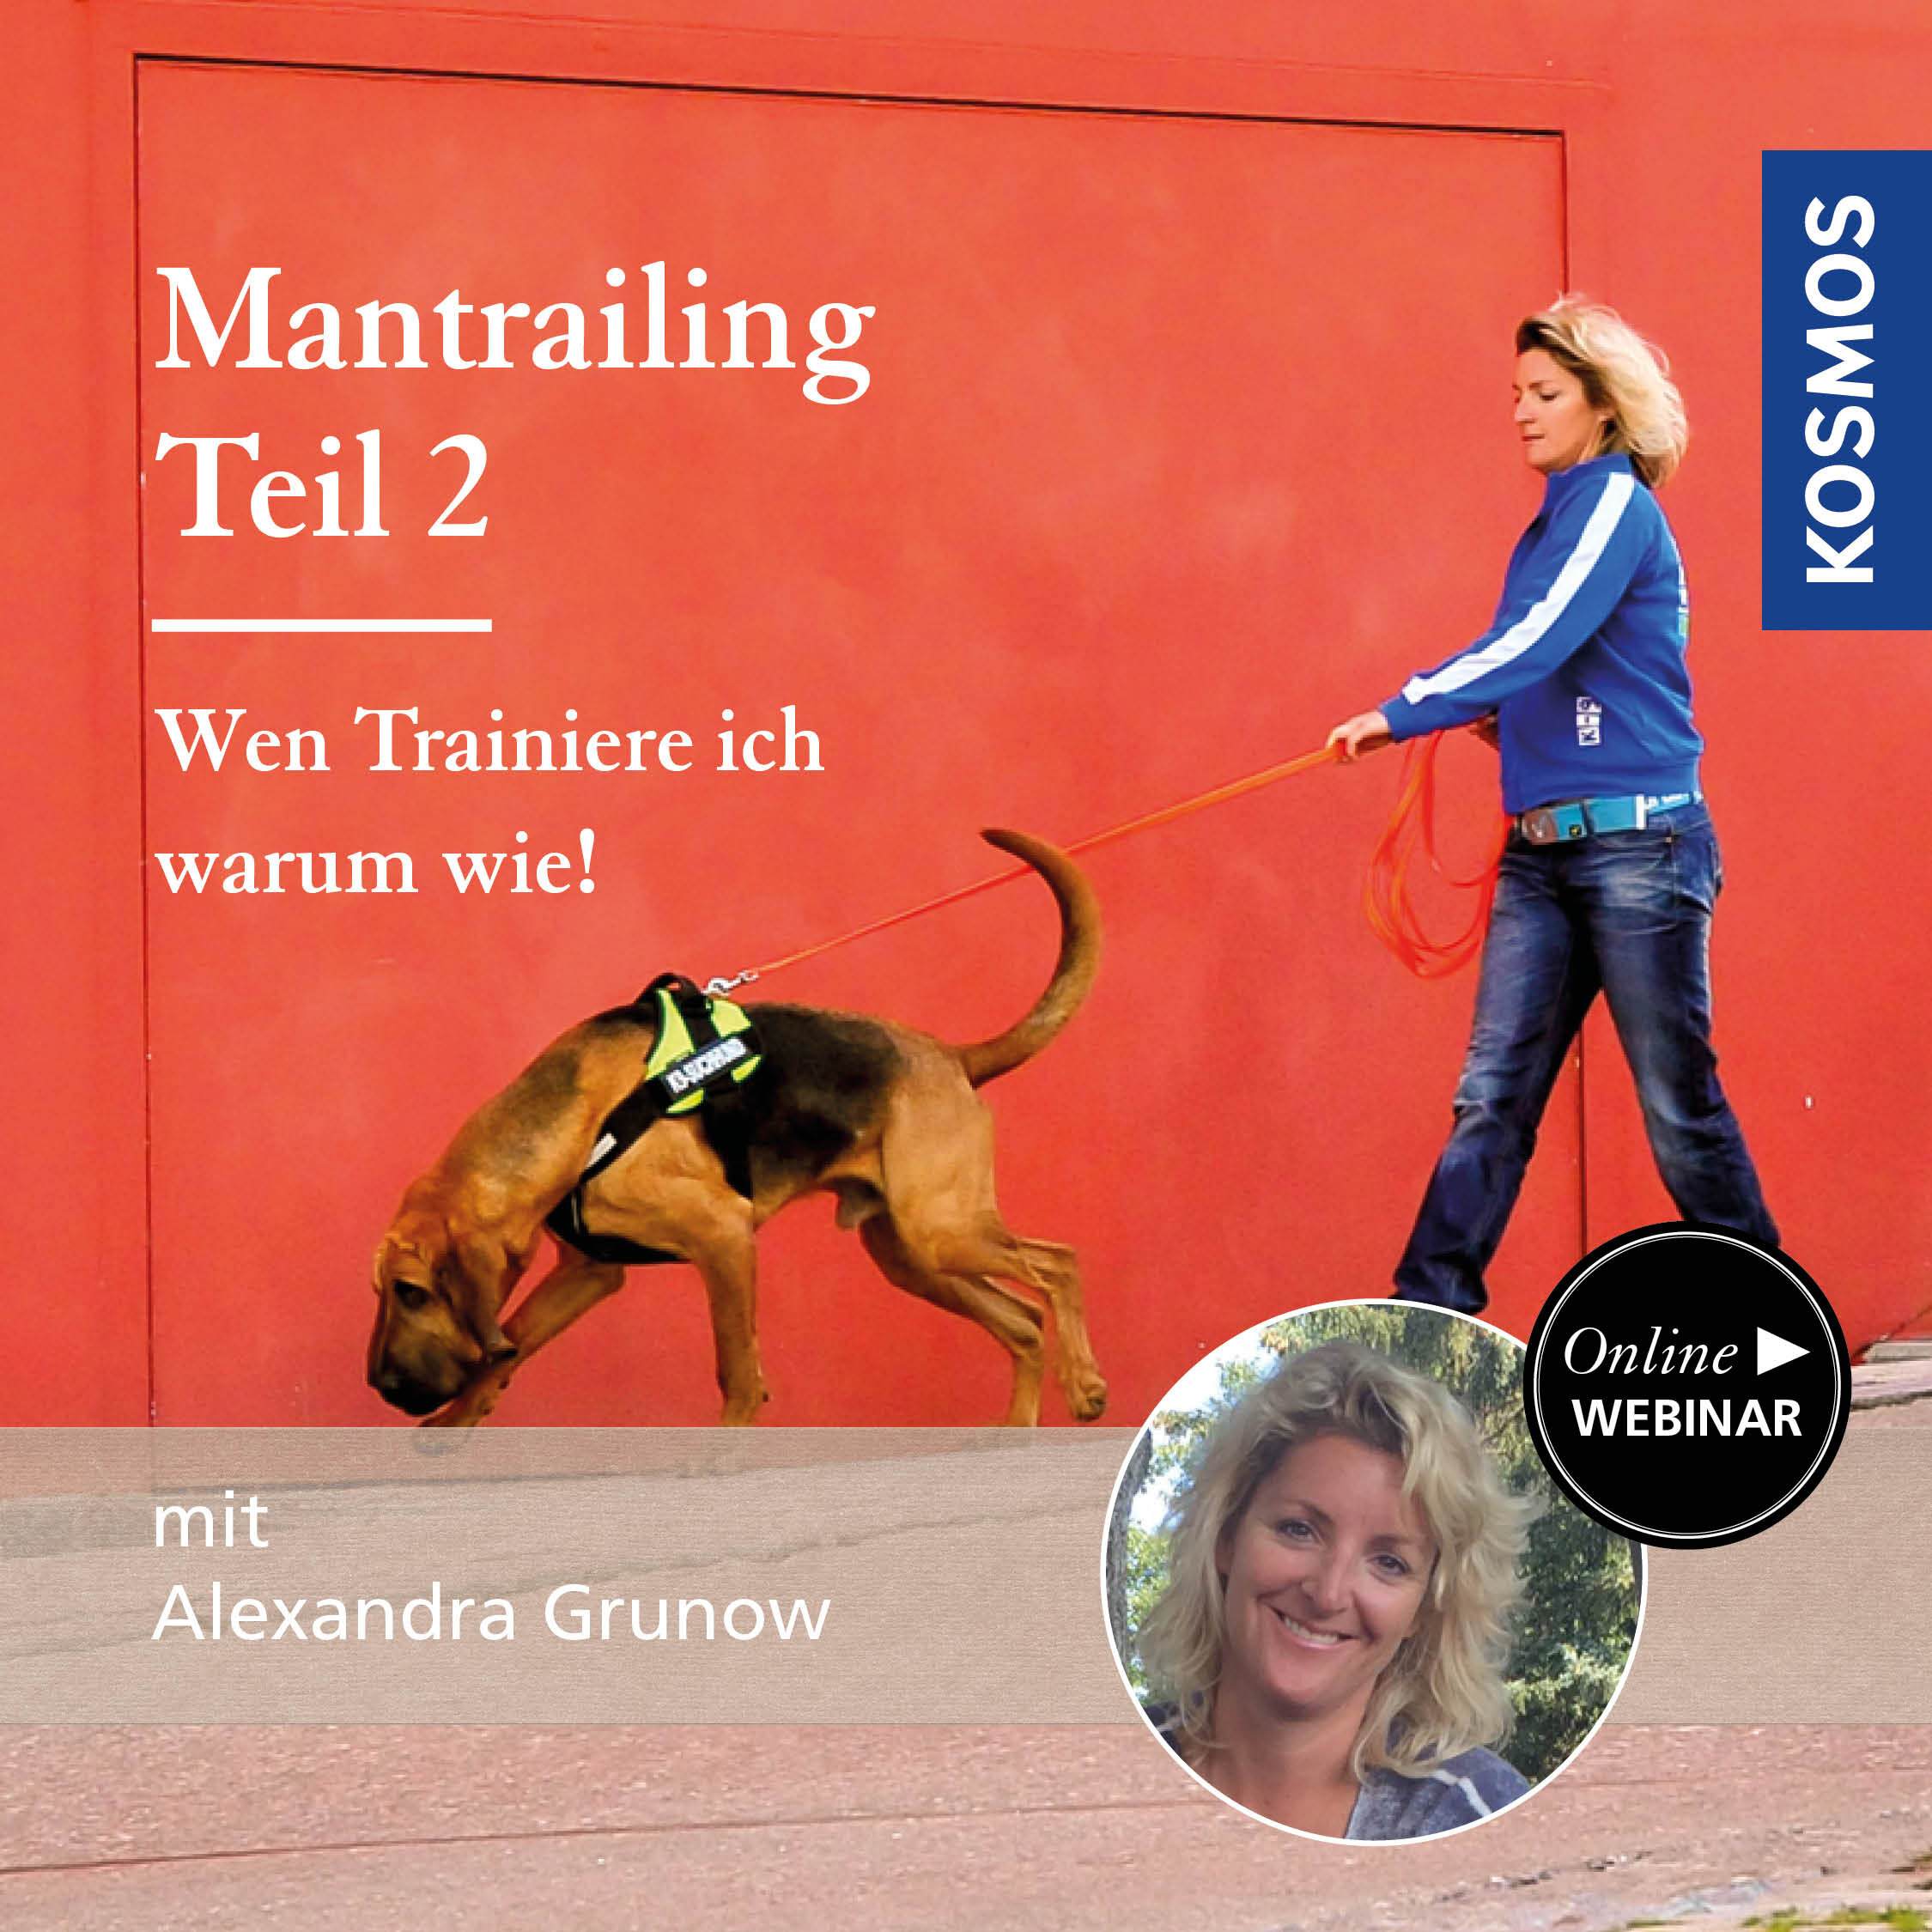 Mantrailing: Wen trainiere ich warum wie! Teil 2